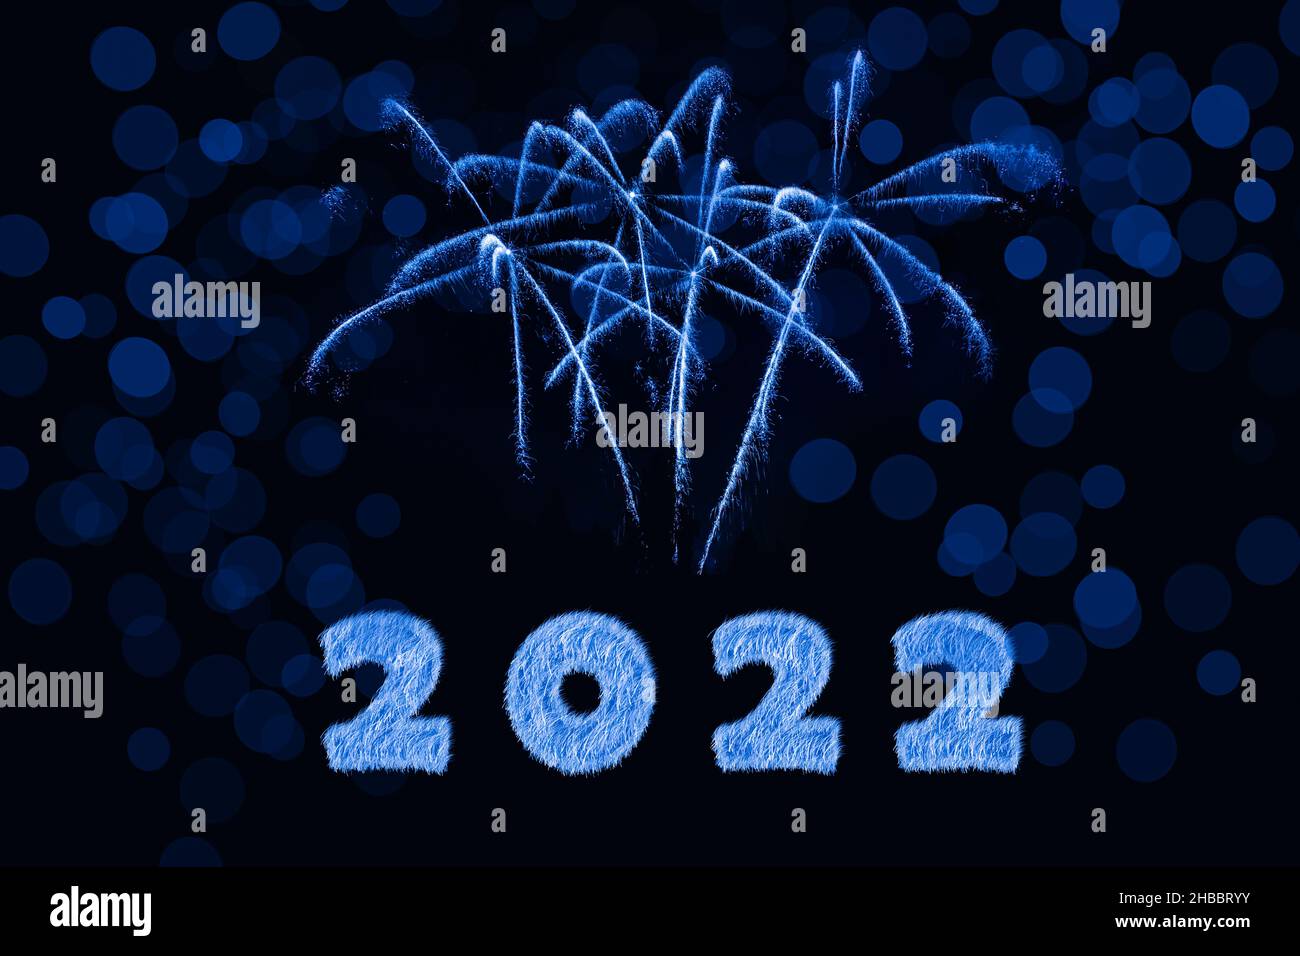 Bonne année 2022.Étincelant brûlante numéros année 2022 avec feu d'artifice et bokeh sur fond noir. Banque D'Images